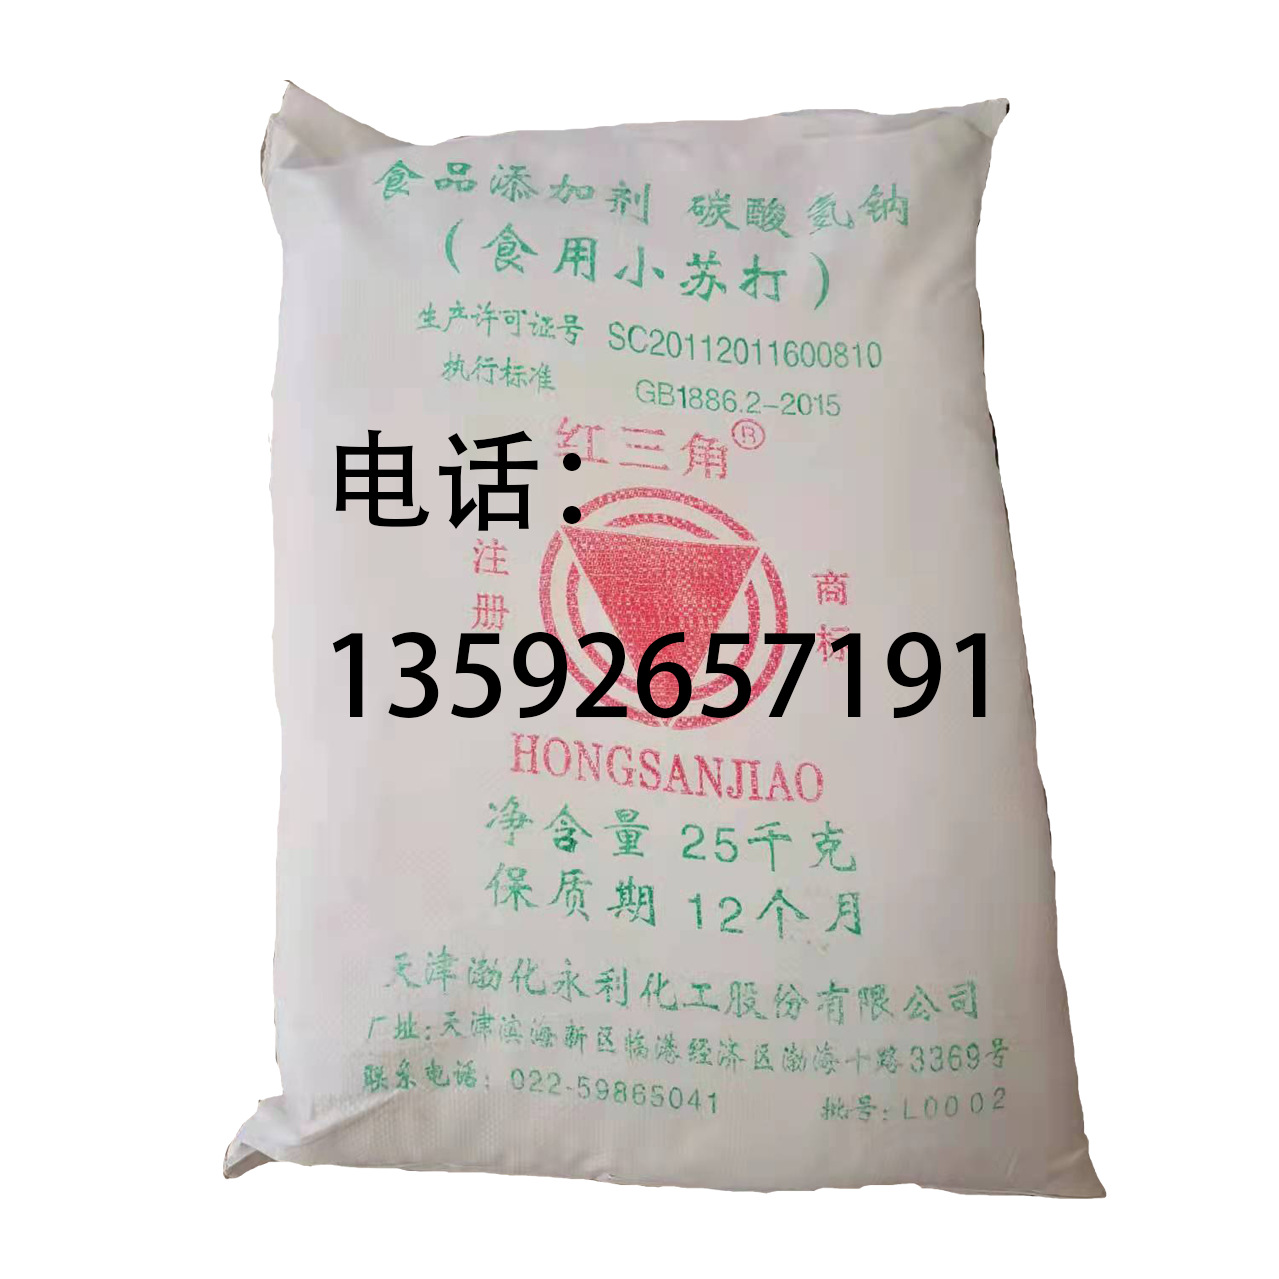 【小苏打】现货供应红三角牌小苏打25kg 食品级碳酸氢钠